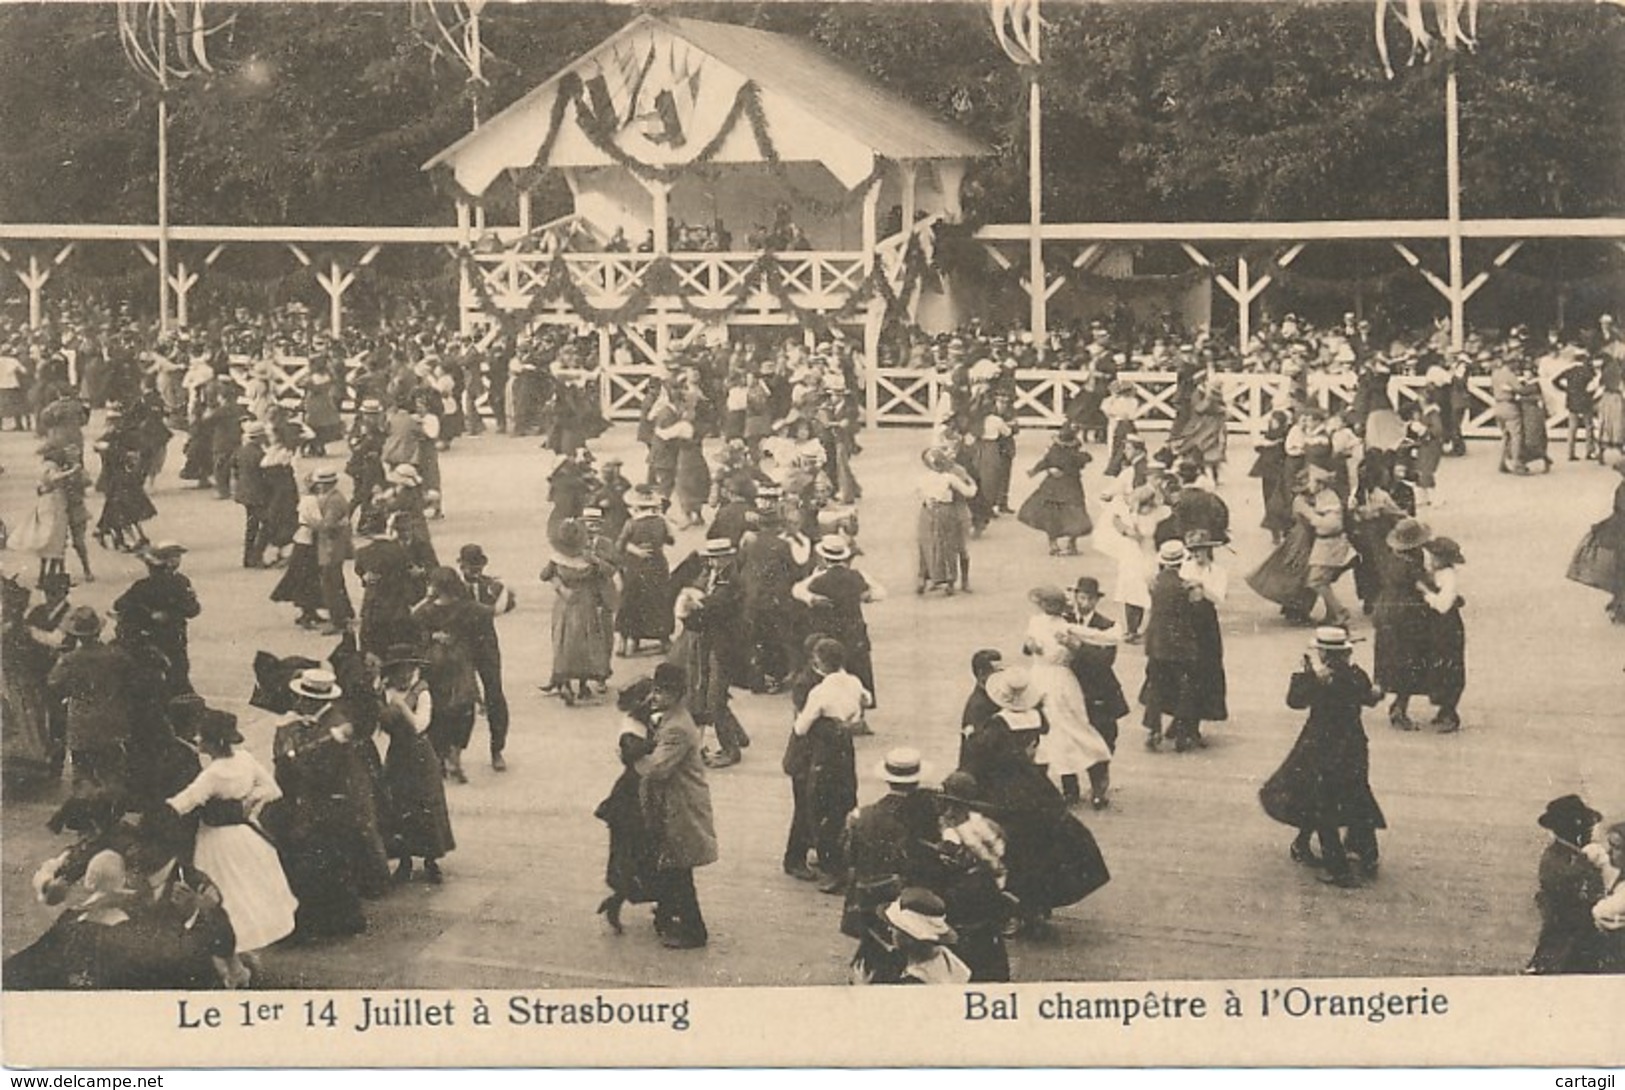 Lot -L400 -67- Strasbourg Orangerie -Belle sélection  de 38  cartes postales ( scans et description)